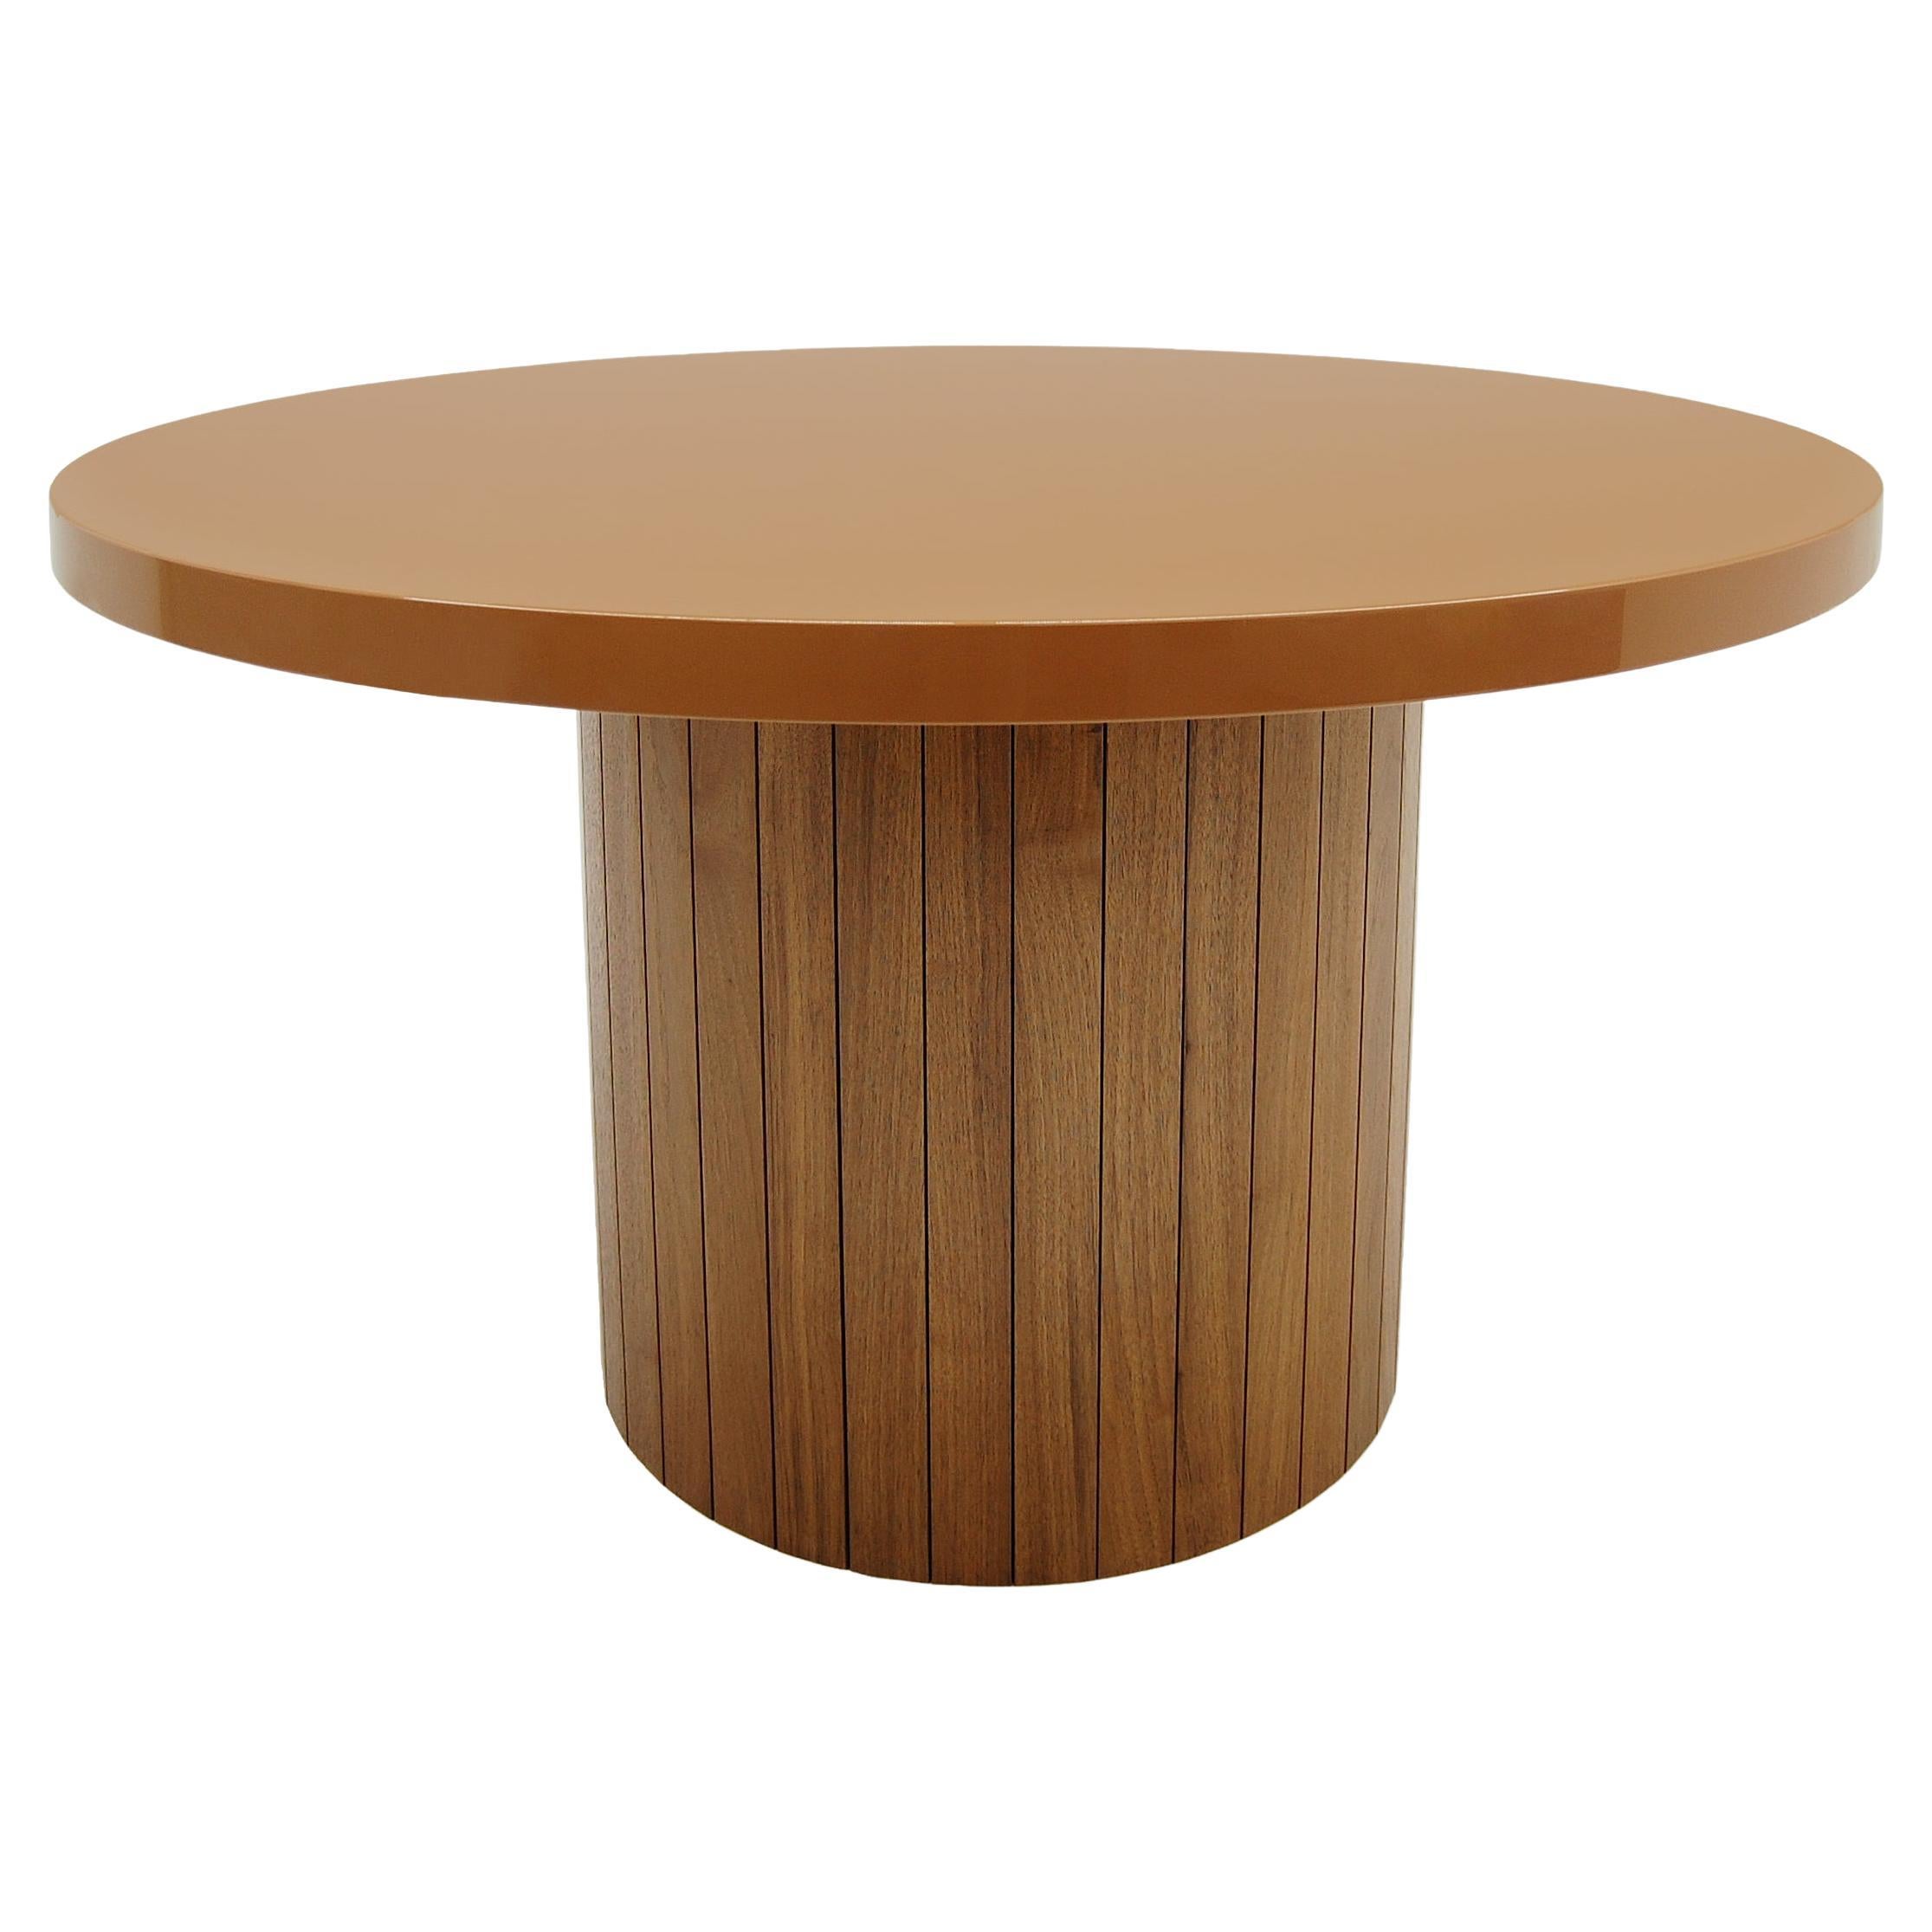 Table en planche ronde avec plateau en laque et base en bois, noyer, fabriquée sur commande  en vente